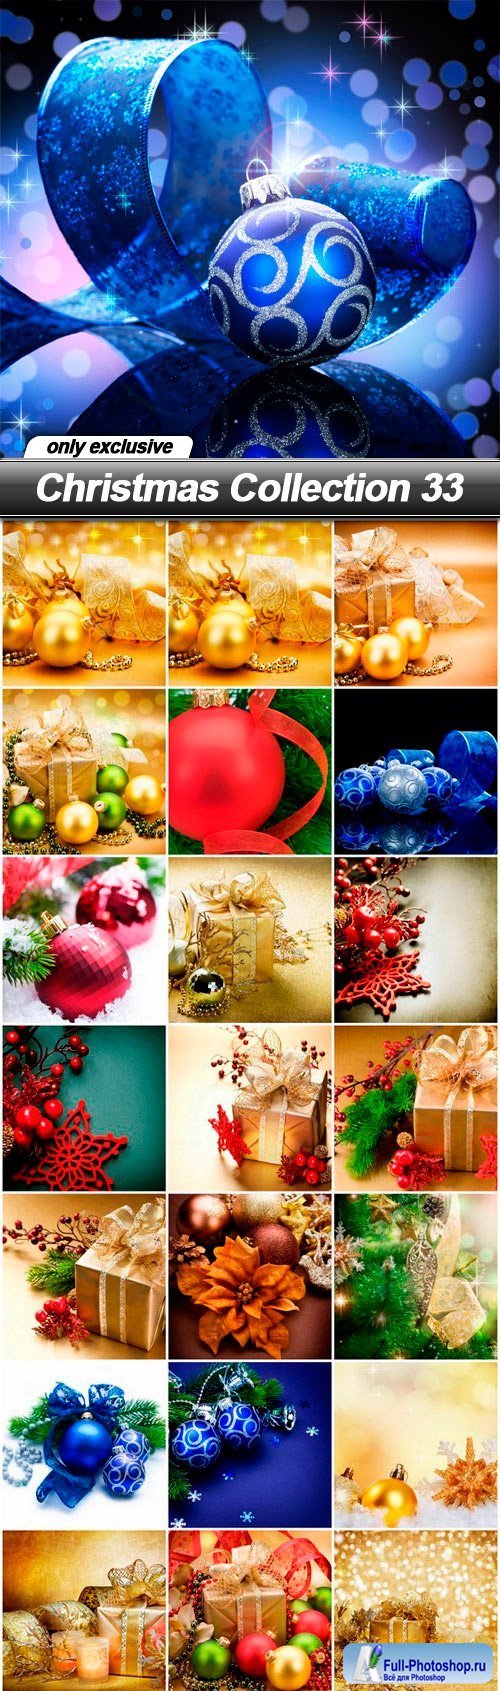 Christmas Collection 33 - 25 UHQ JPEG